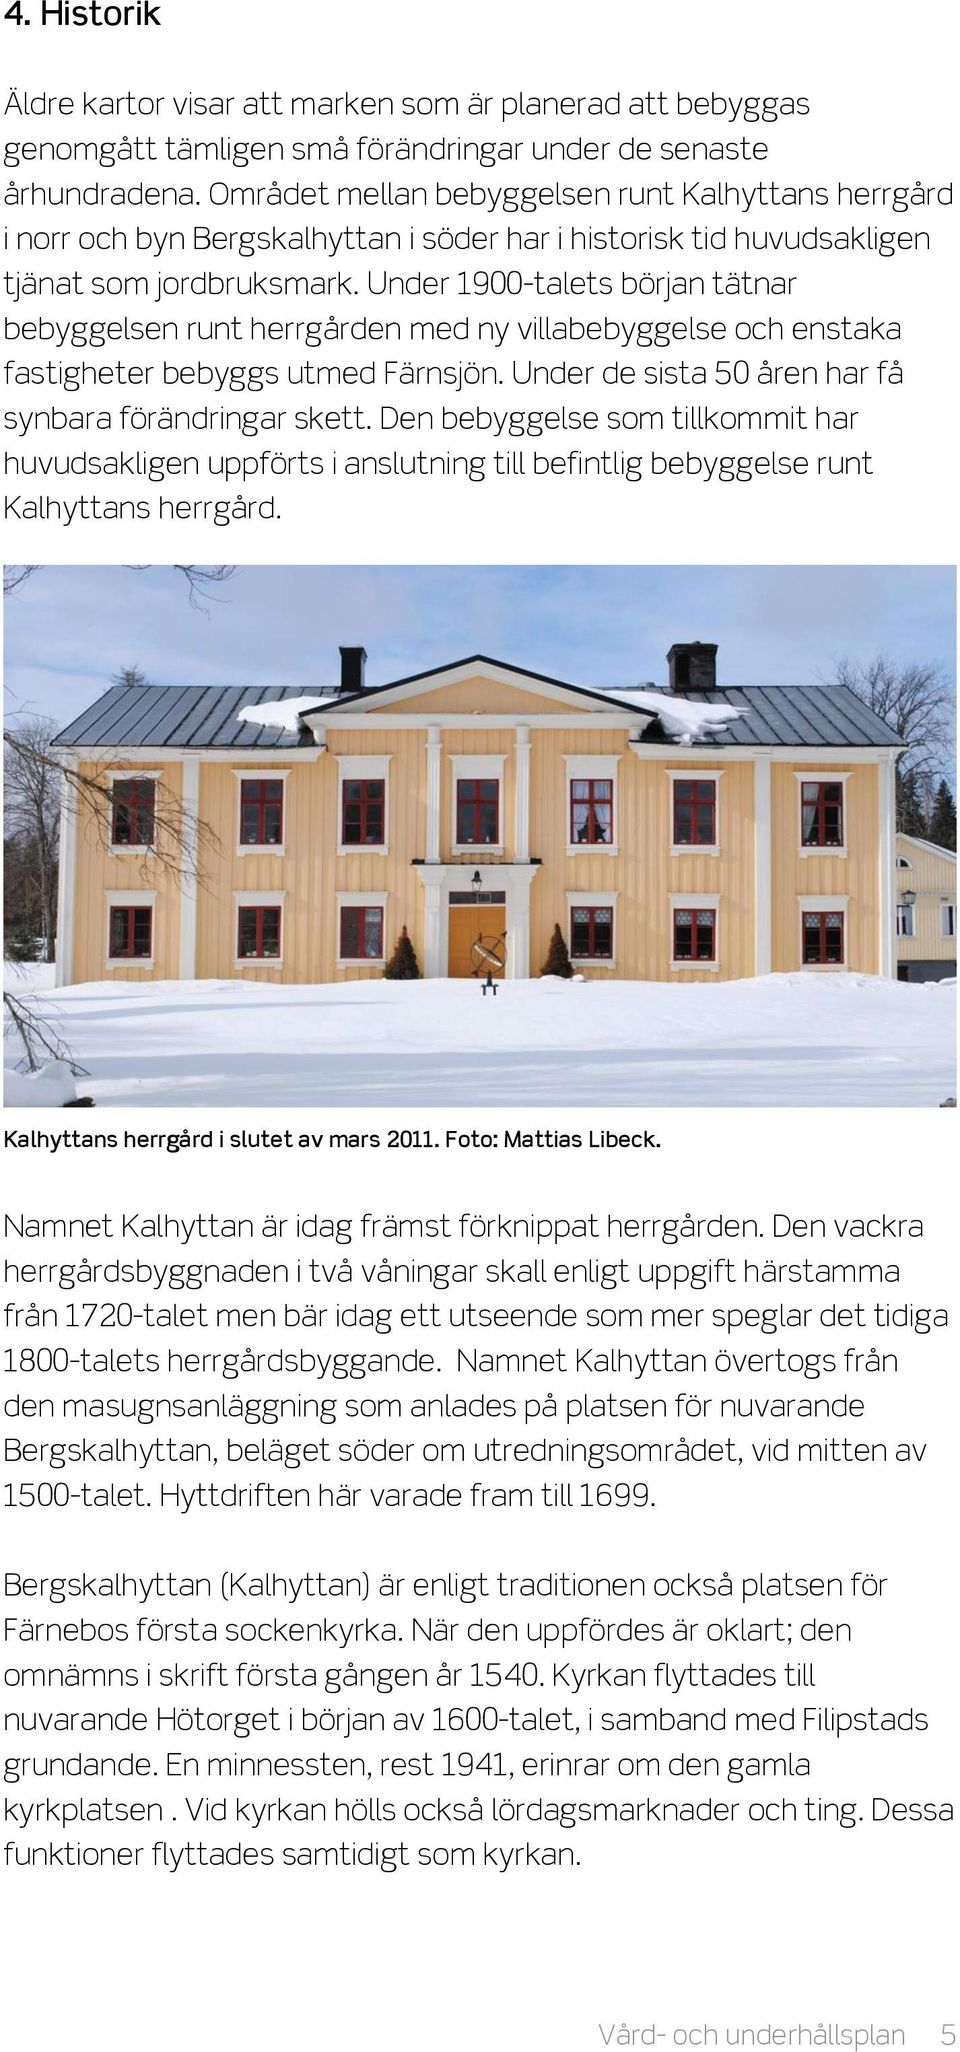 Under 1900-talets början tätnar bebyggelsen runt herrgården med ny villabebyggelse och enstaka fastigheter bebyggs utmed Färnsjön. Under de sista 50 åren har få synbara förändringar skett.